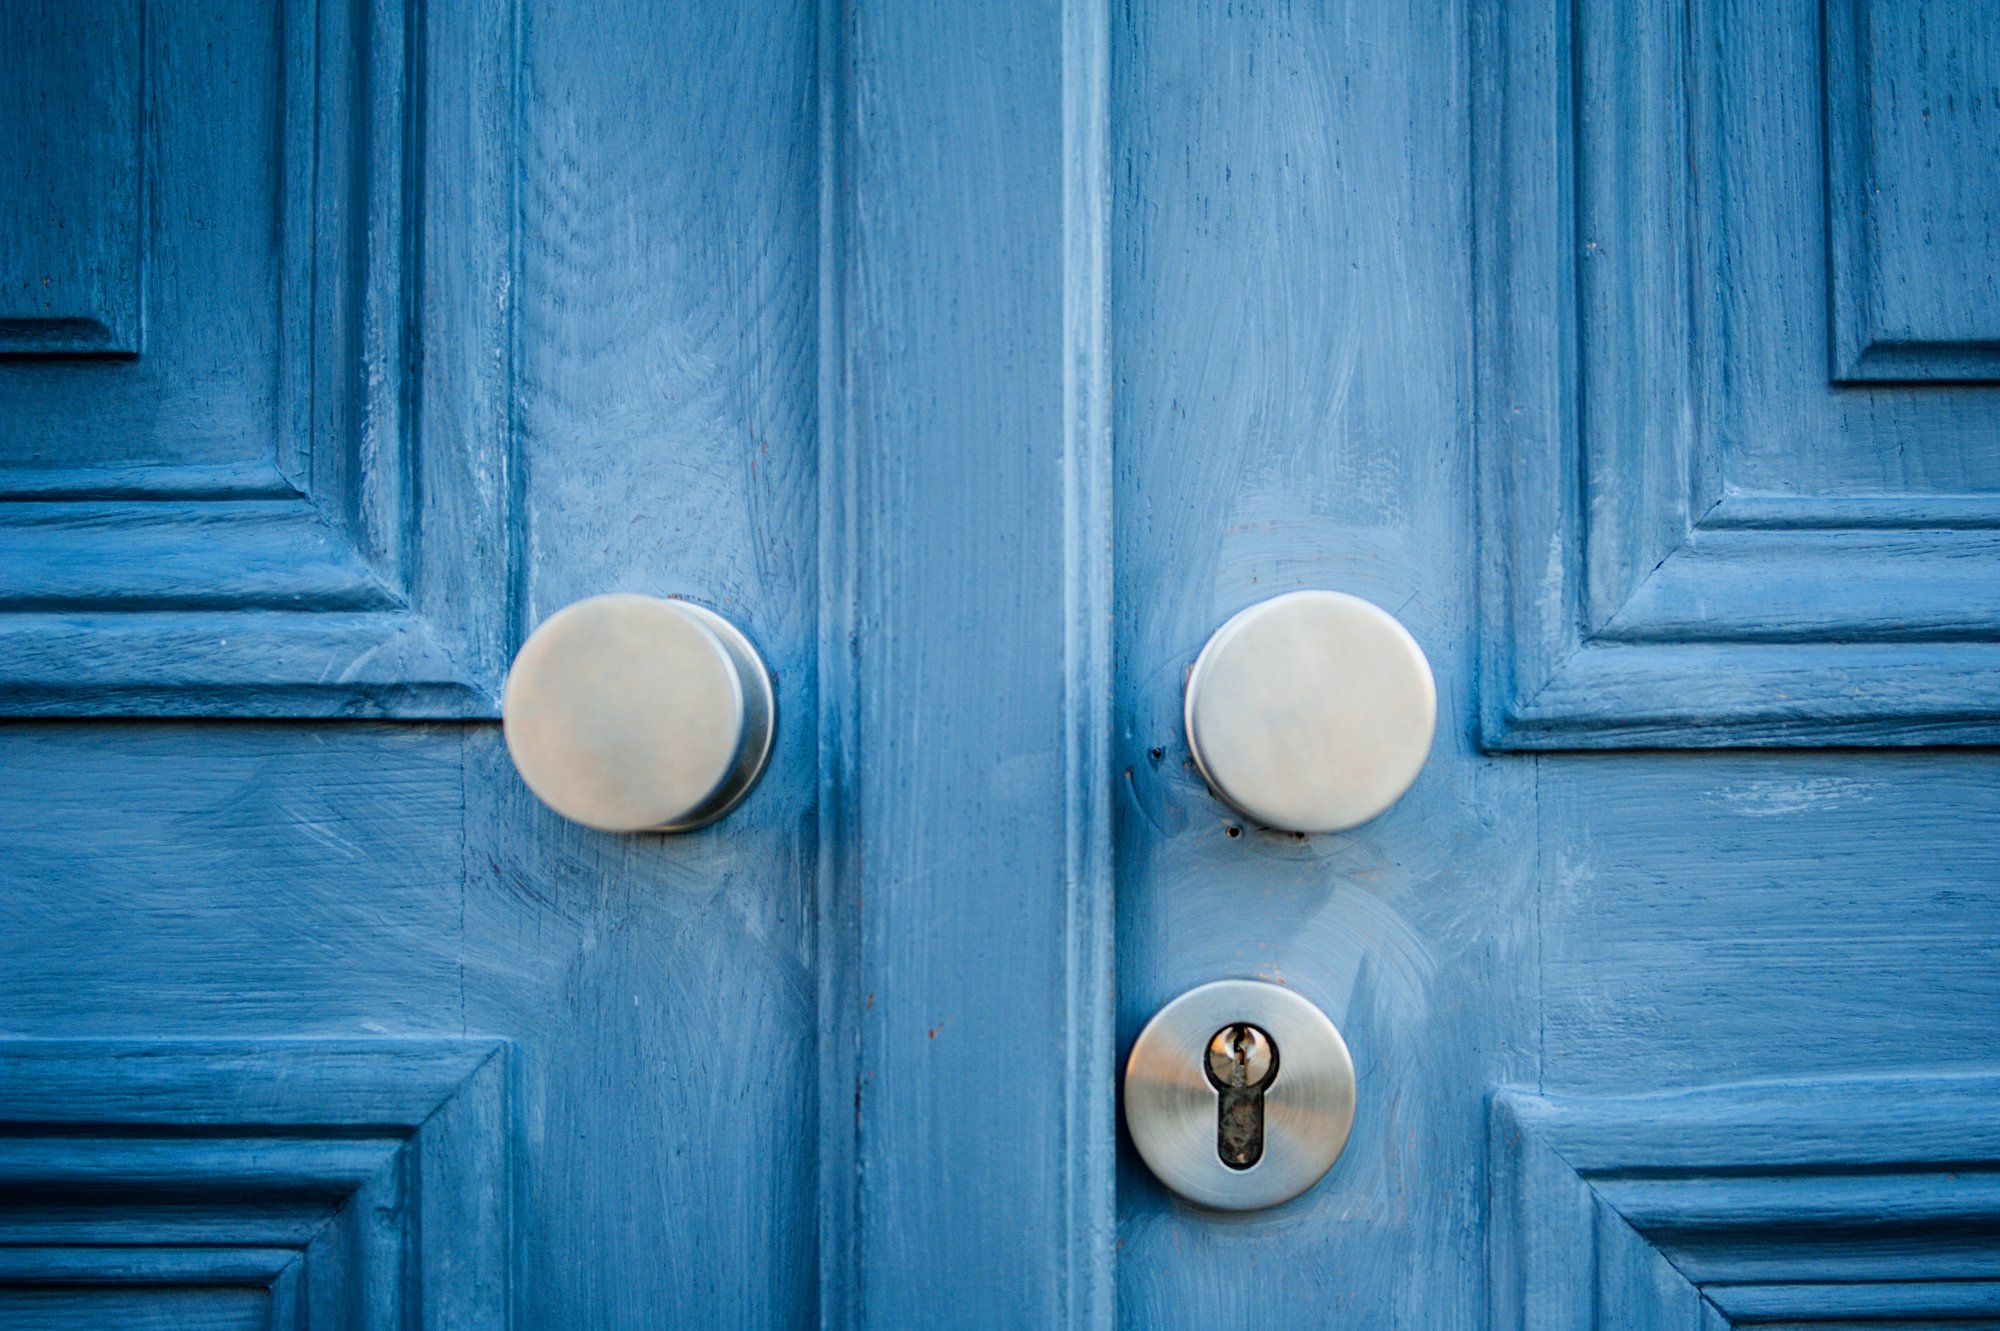 Хата дверей. Изящная дверная ручка. Ручка голубая старинная. Винтажная дверная ручка на белой двери. Glowstick Doors.